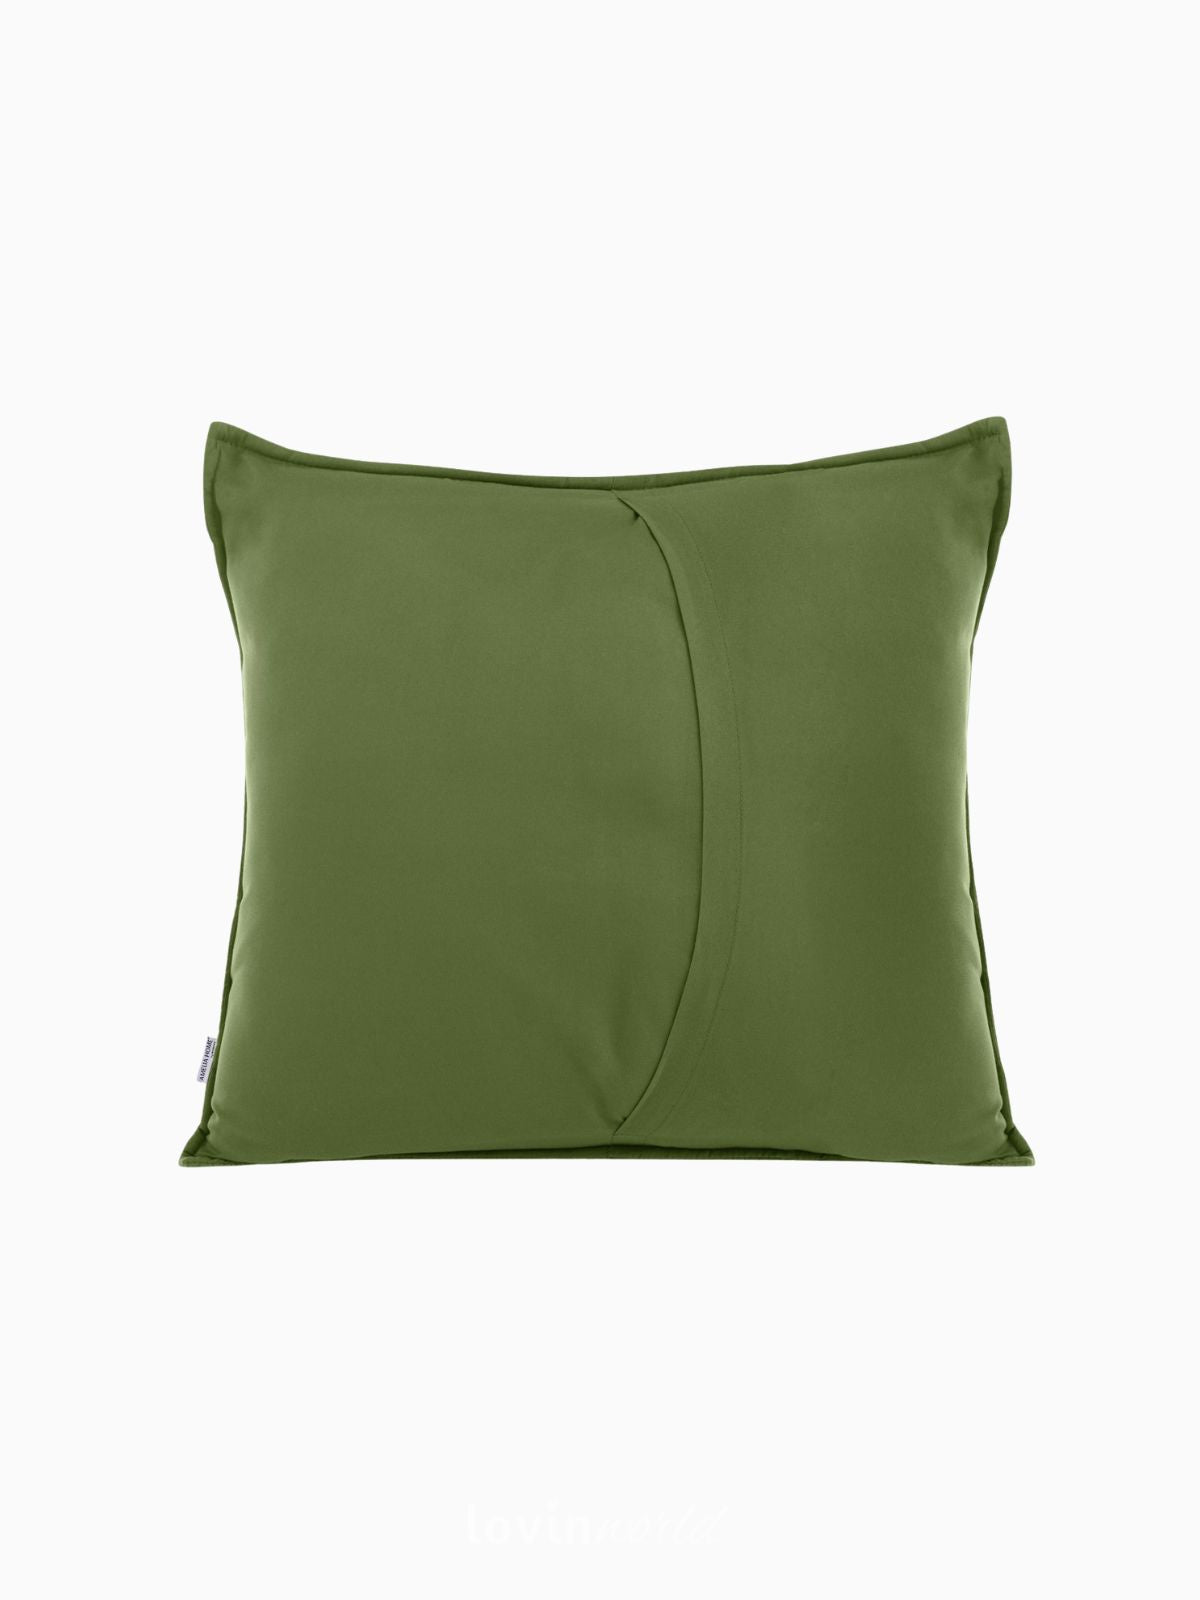 Cuscino decorativo in velluto Palsha, colore verde 45x45 cm.-2